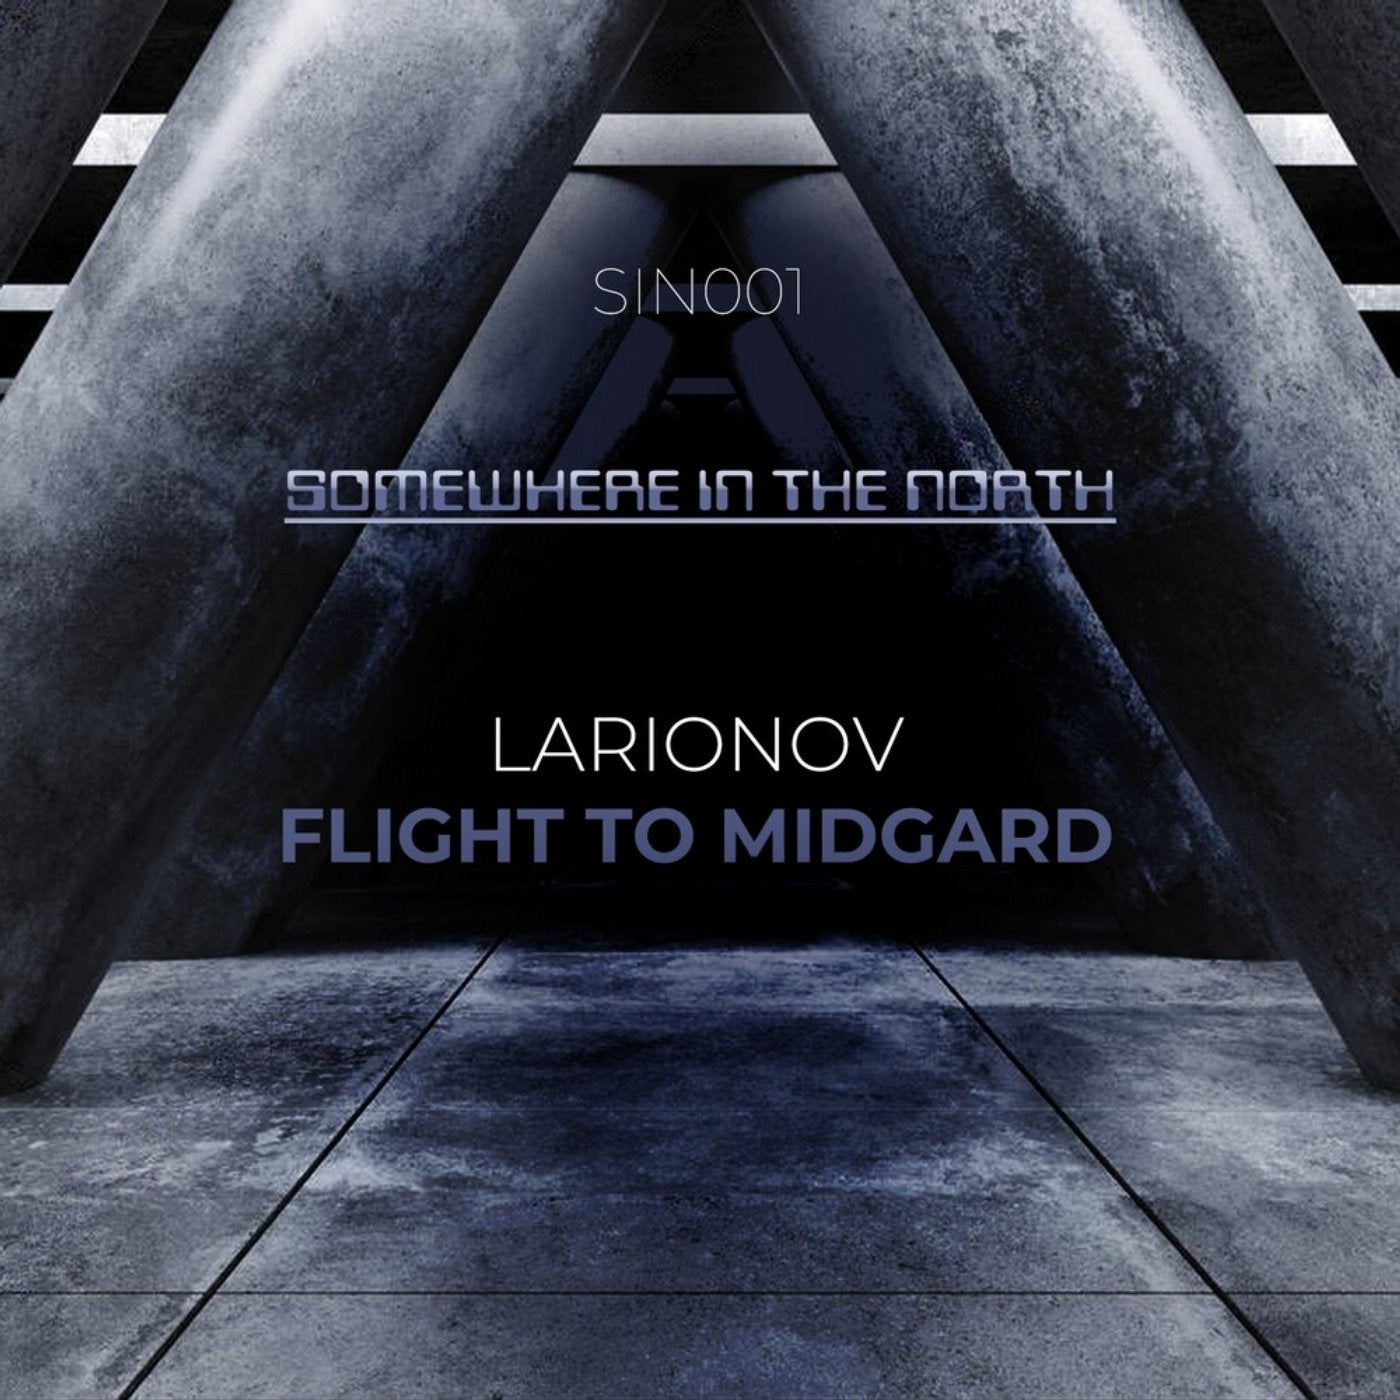 Flight to Midgard